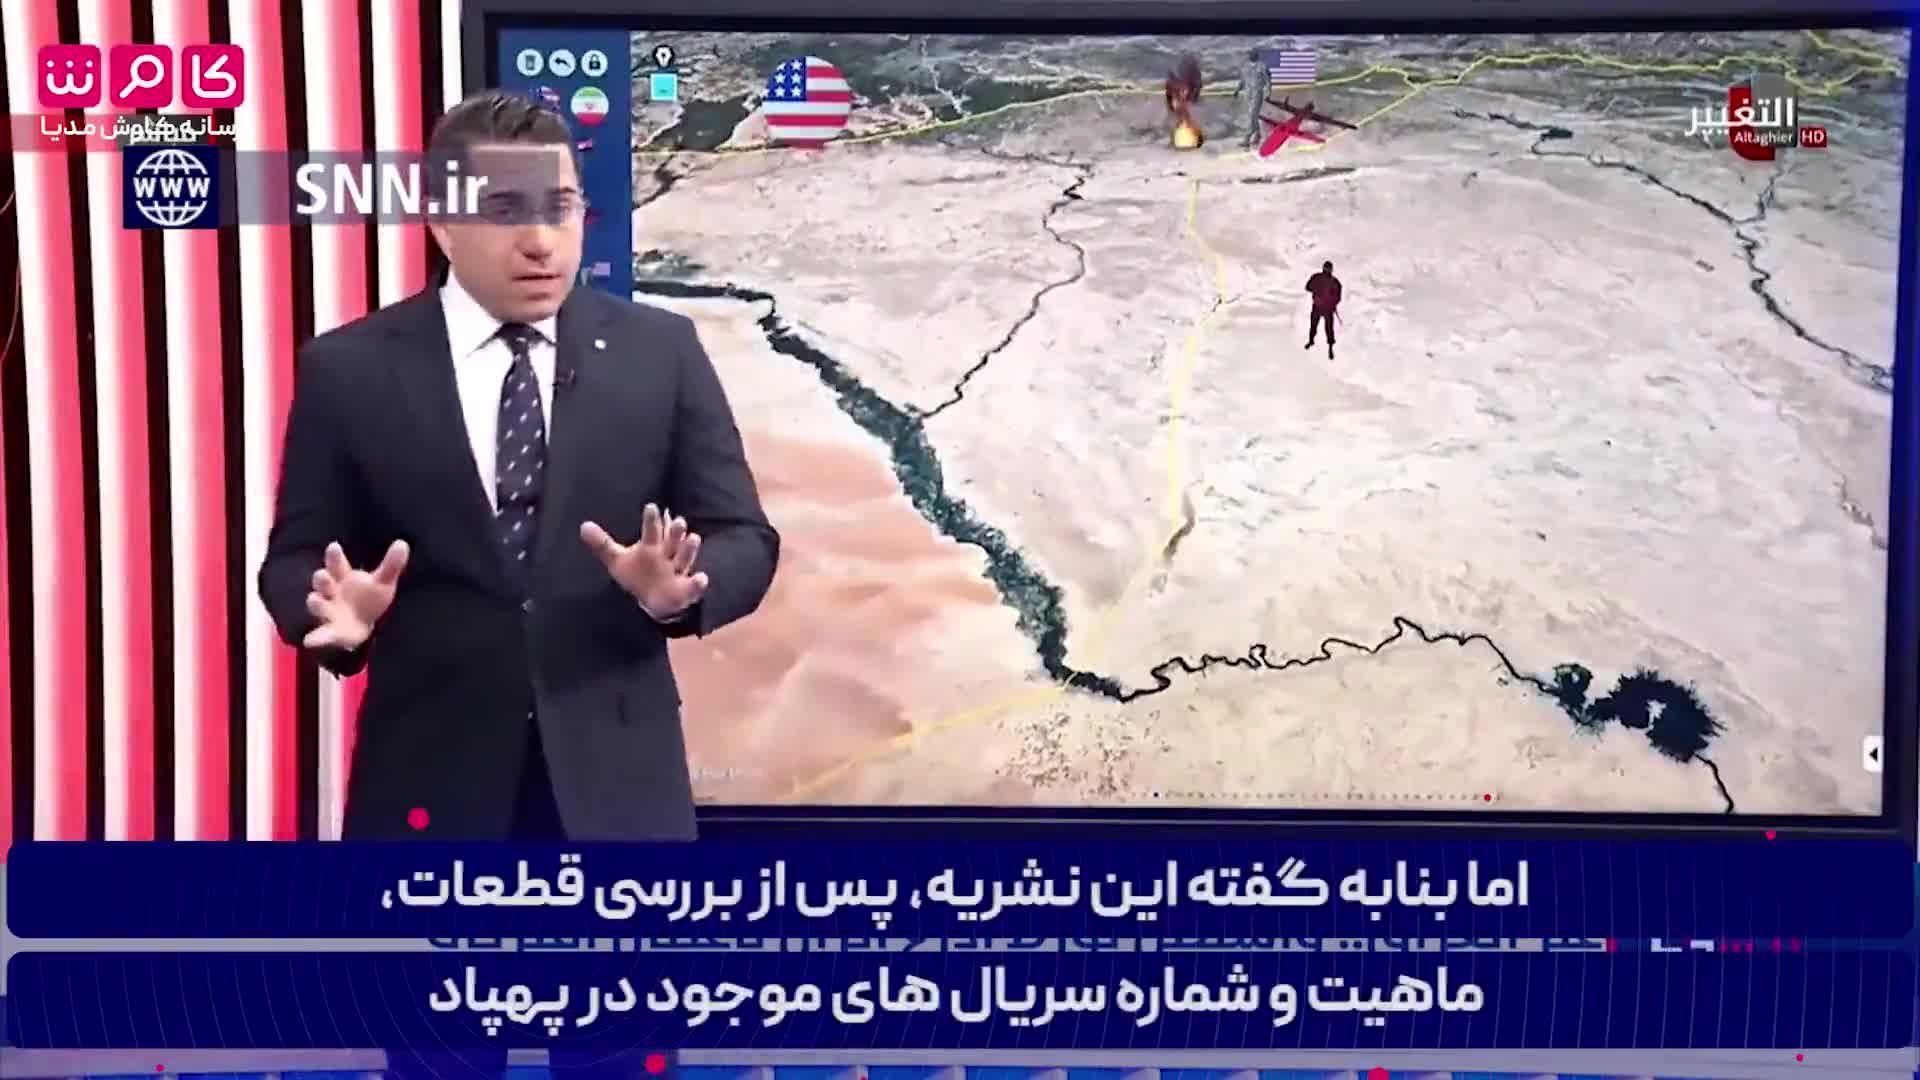 گزارش شبکه آمریکایی از کشته شدن یک مقام بلند پایه ایالات متحده در سوریه توسط پهپادهای ایرانی+فیلم